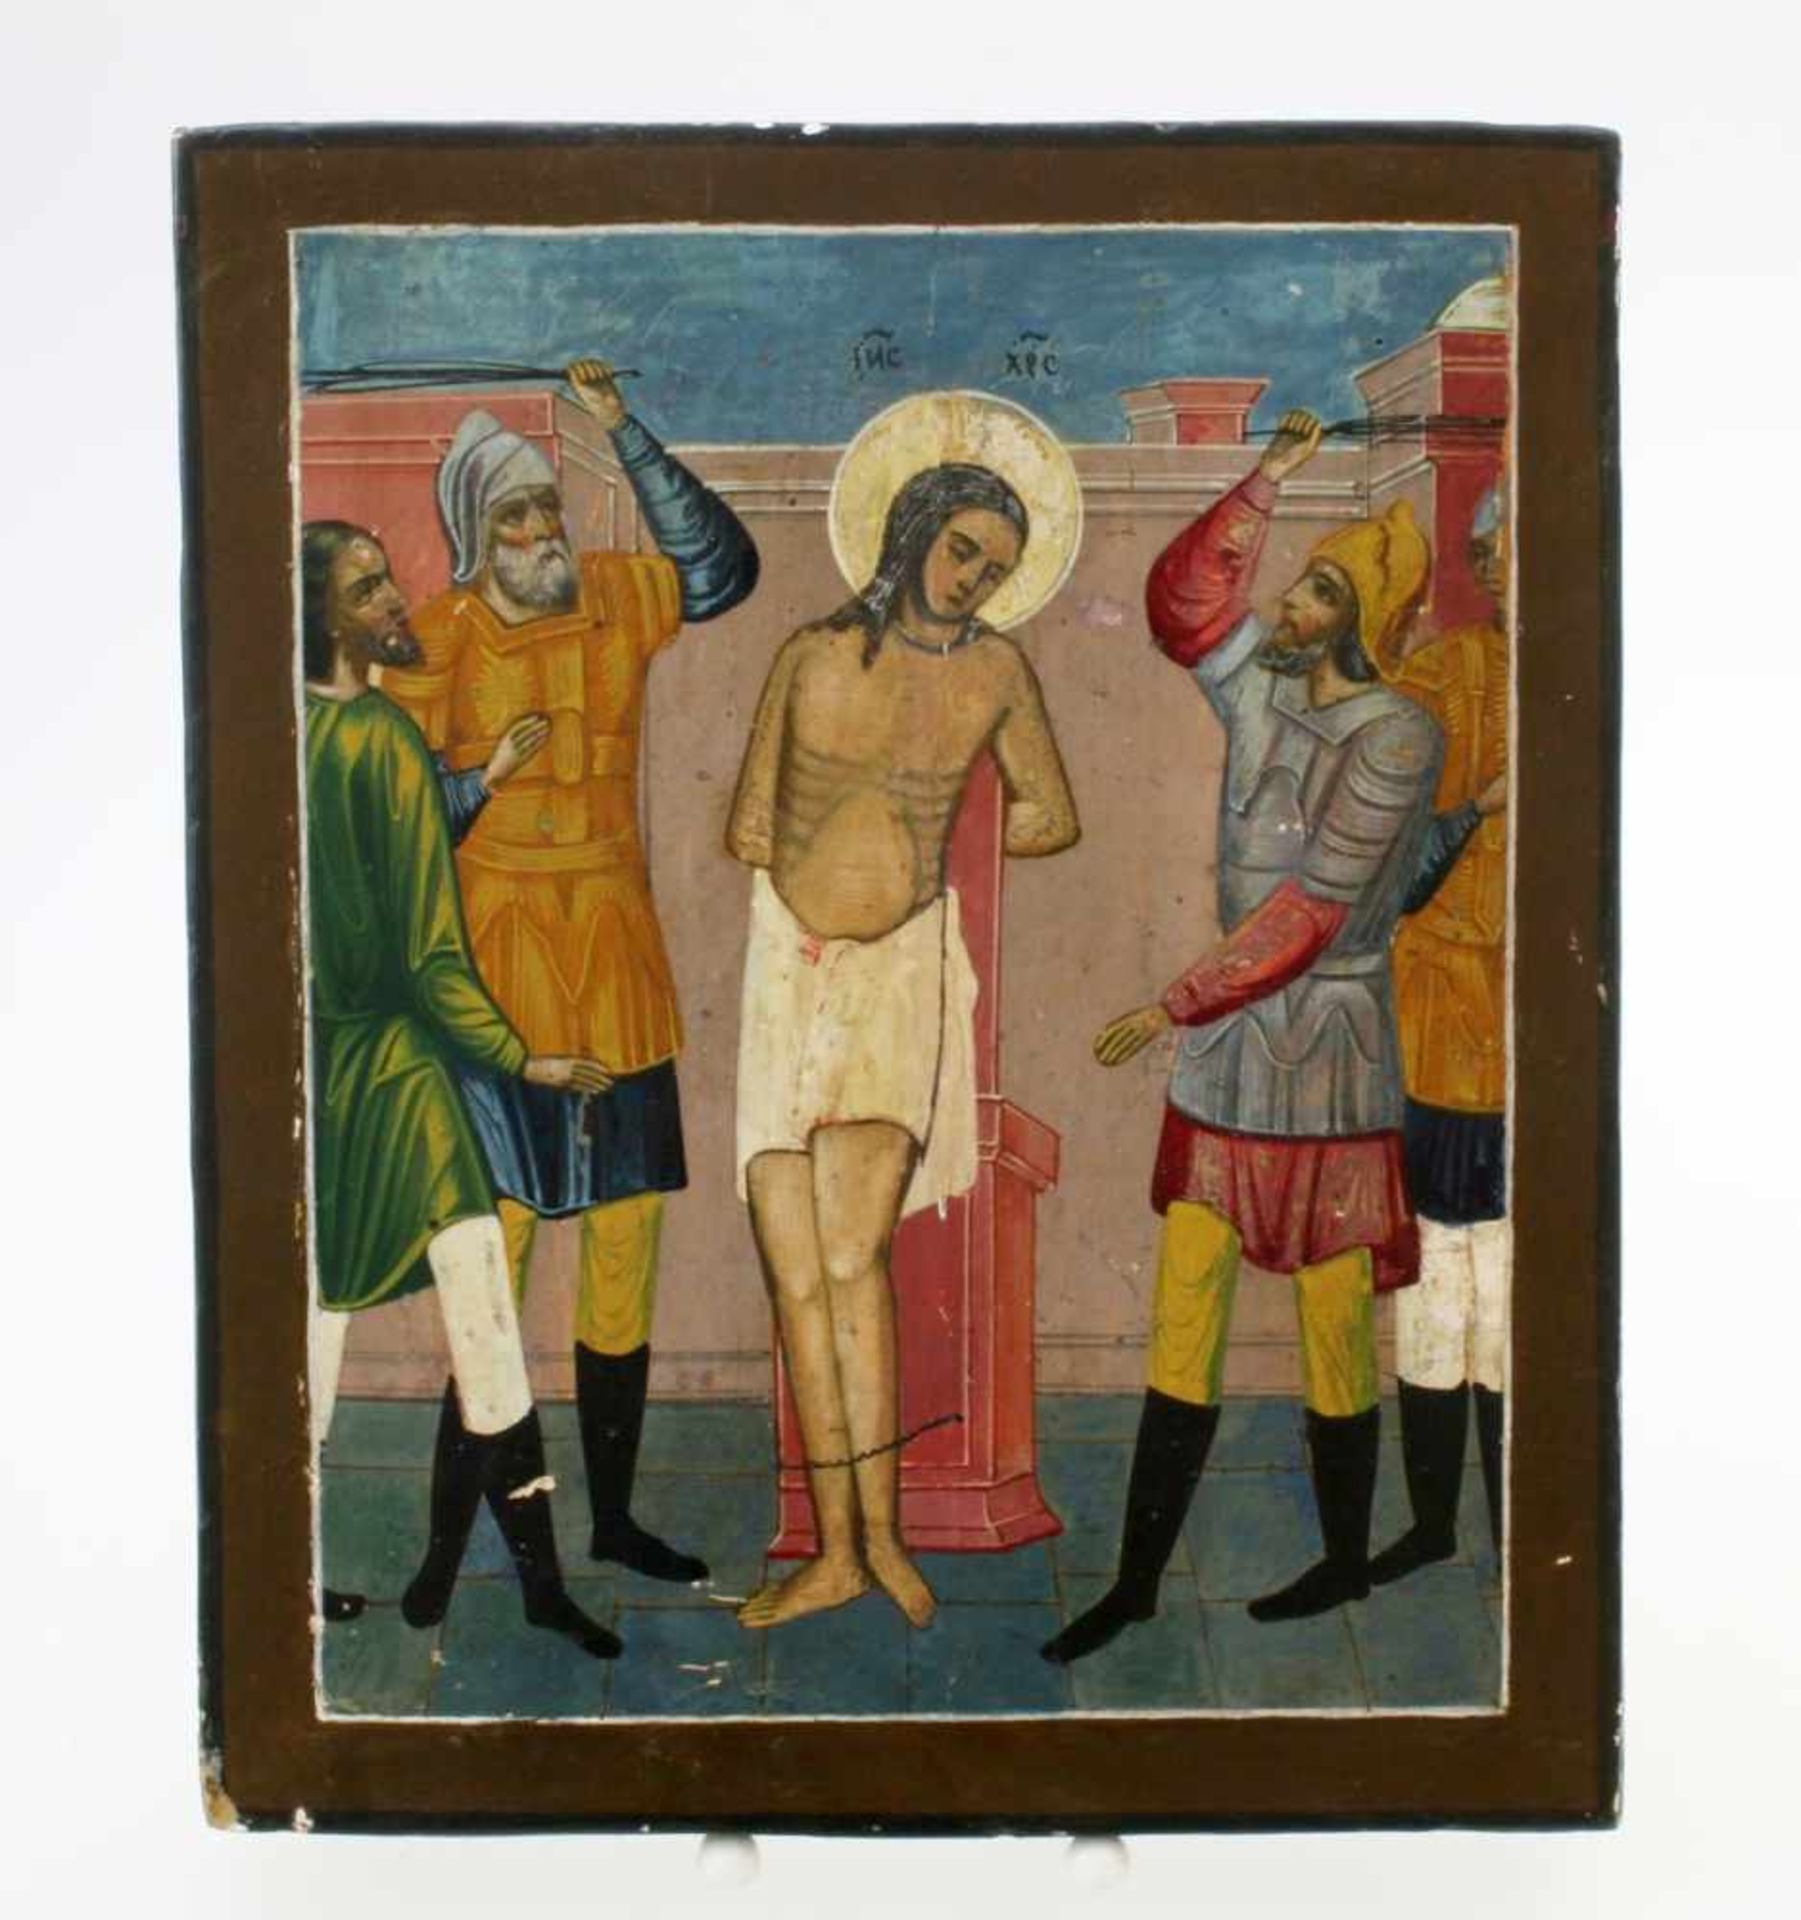 Russische Ikone - 19. Jahrhundert Eitempera auf Kreidegrund. Geiselung Jesus'. Maße: 22 x 26 cm.